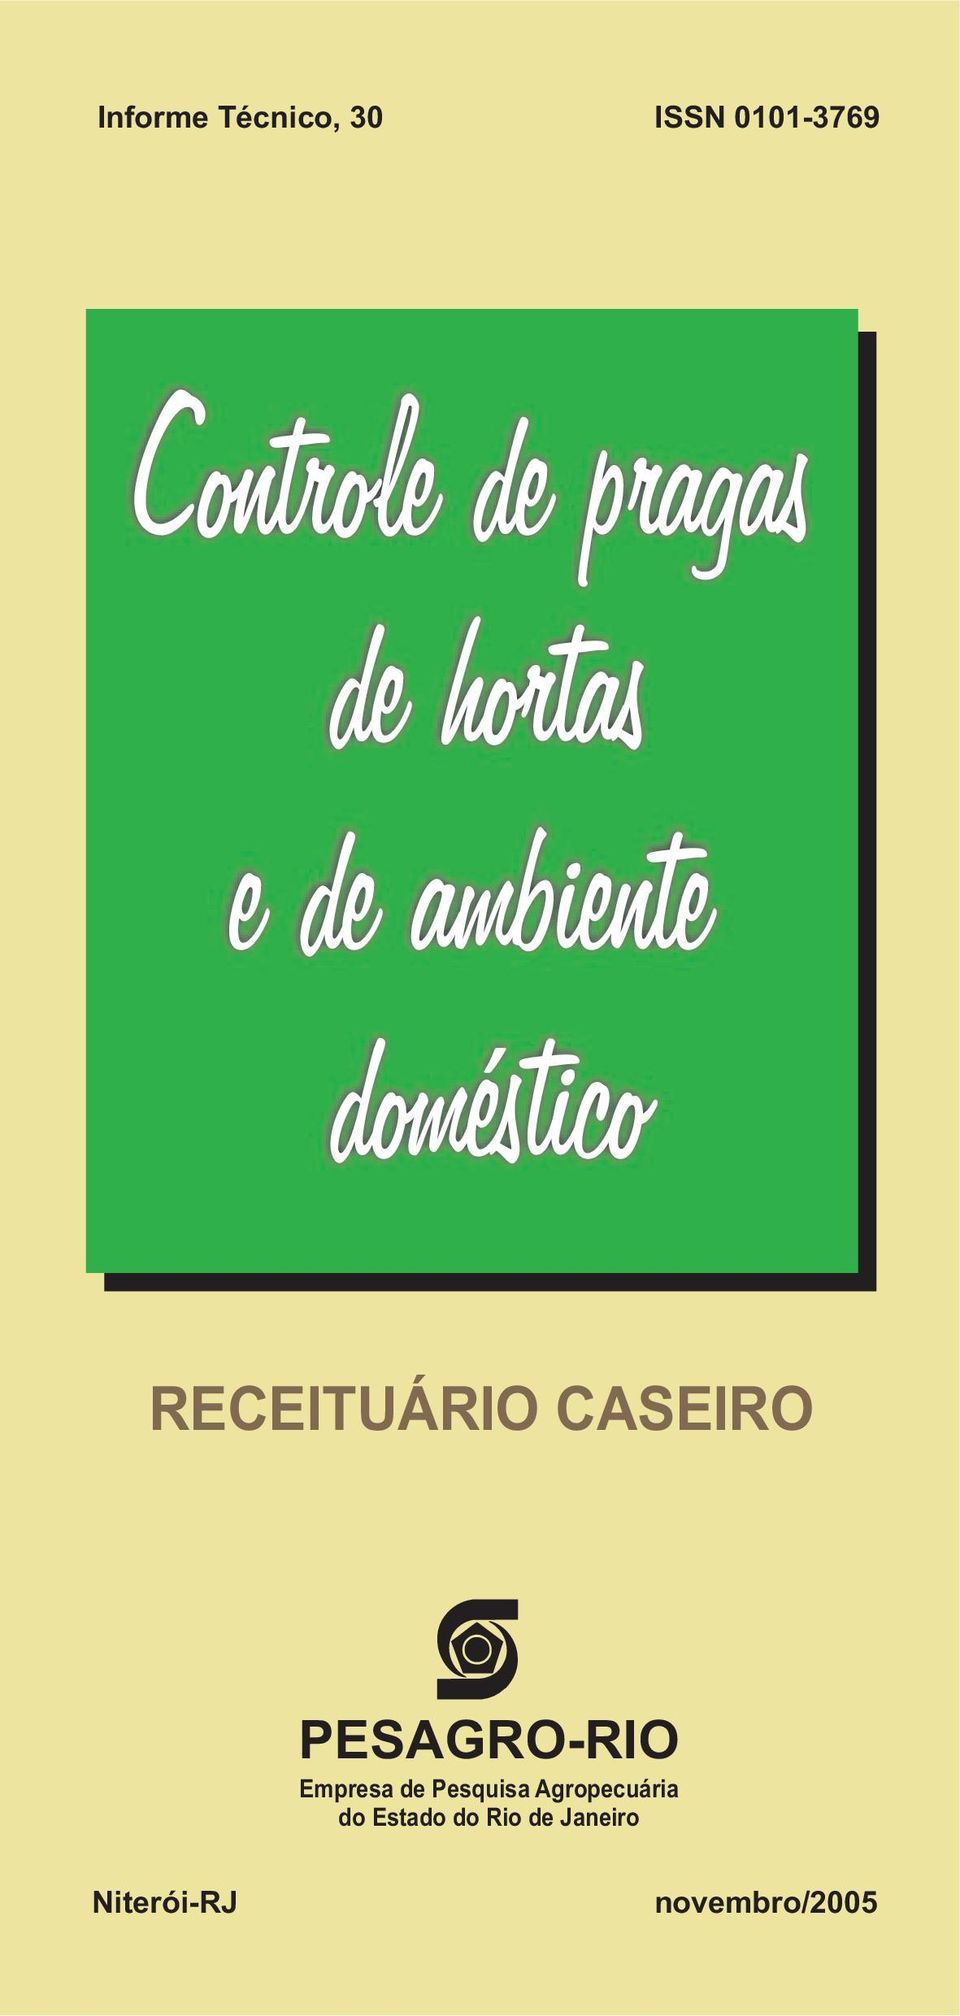 RECEITUÁRIO CASEIRO PESAGRO-RIO Empresa de Pesquisa